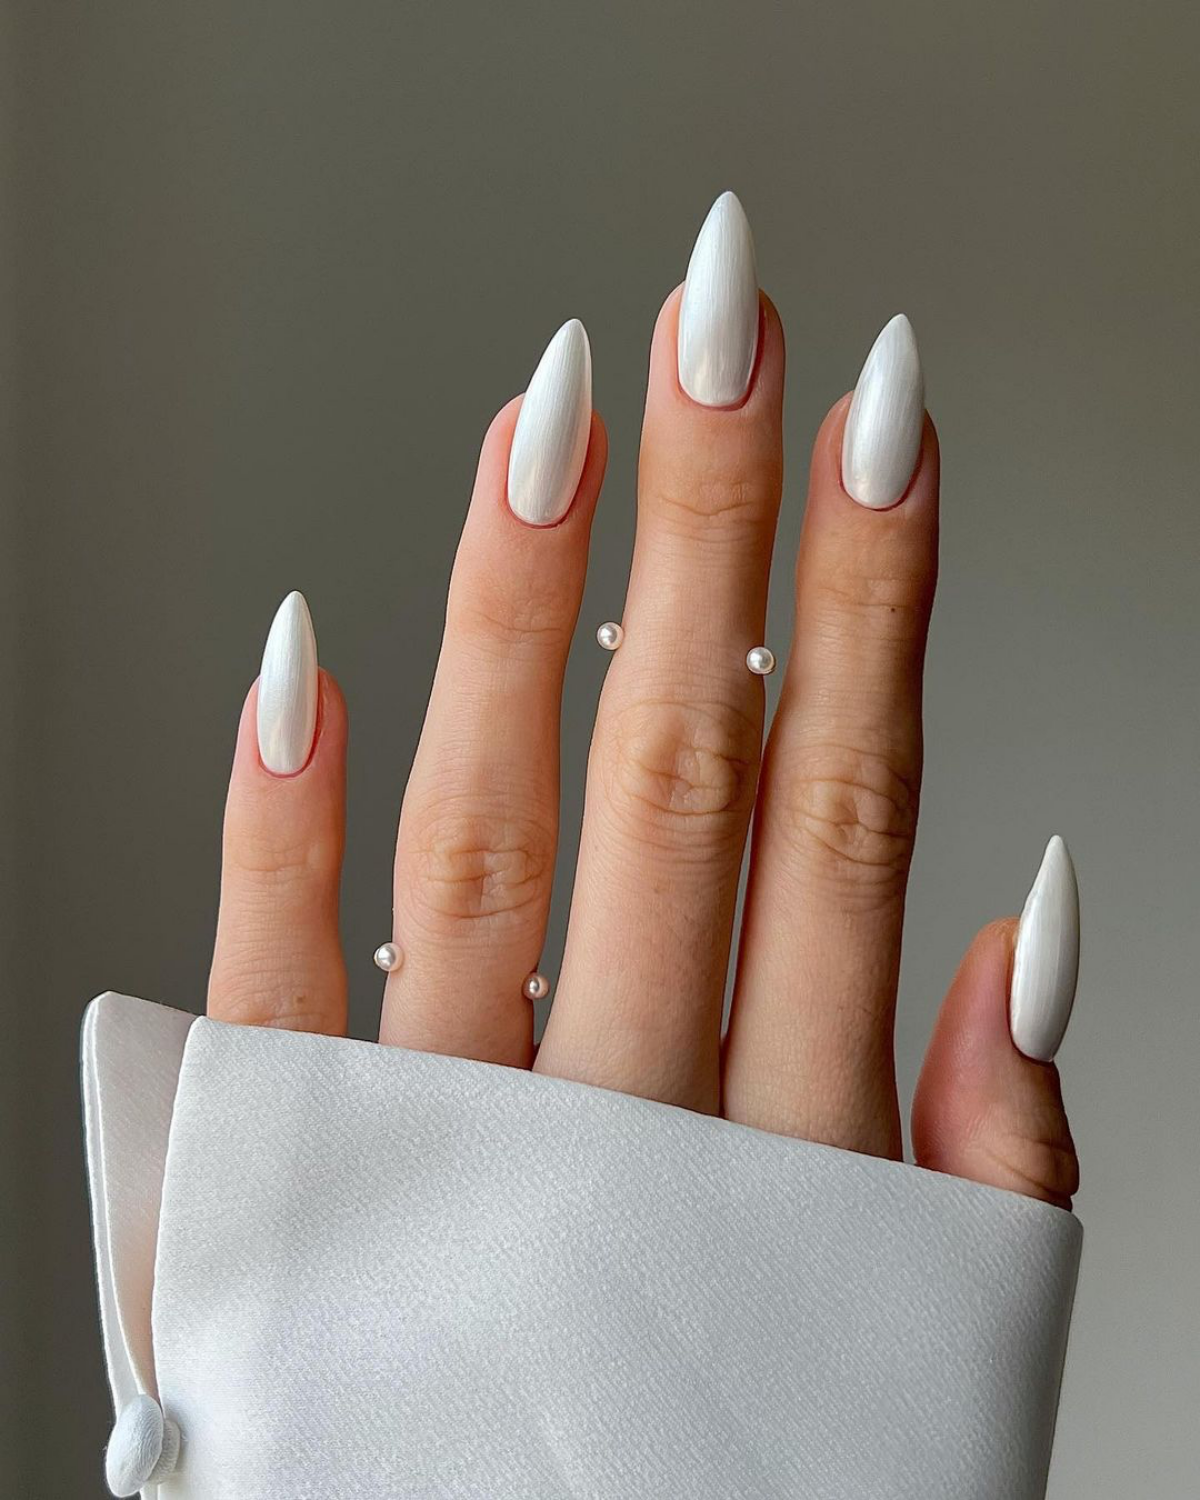 white chrome nails on hand